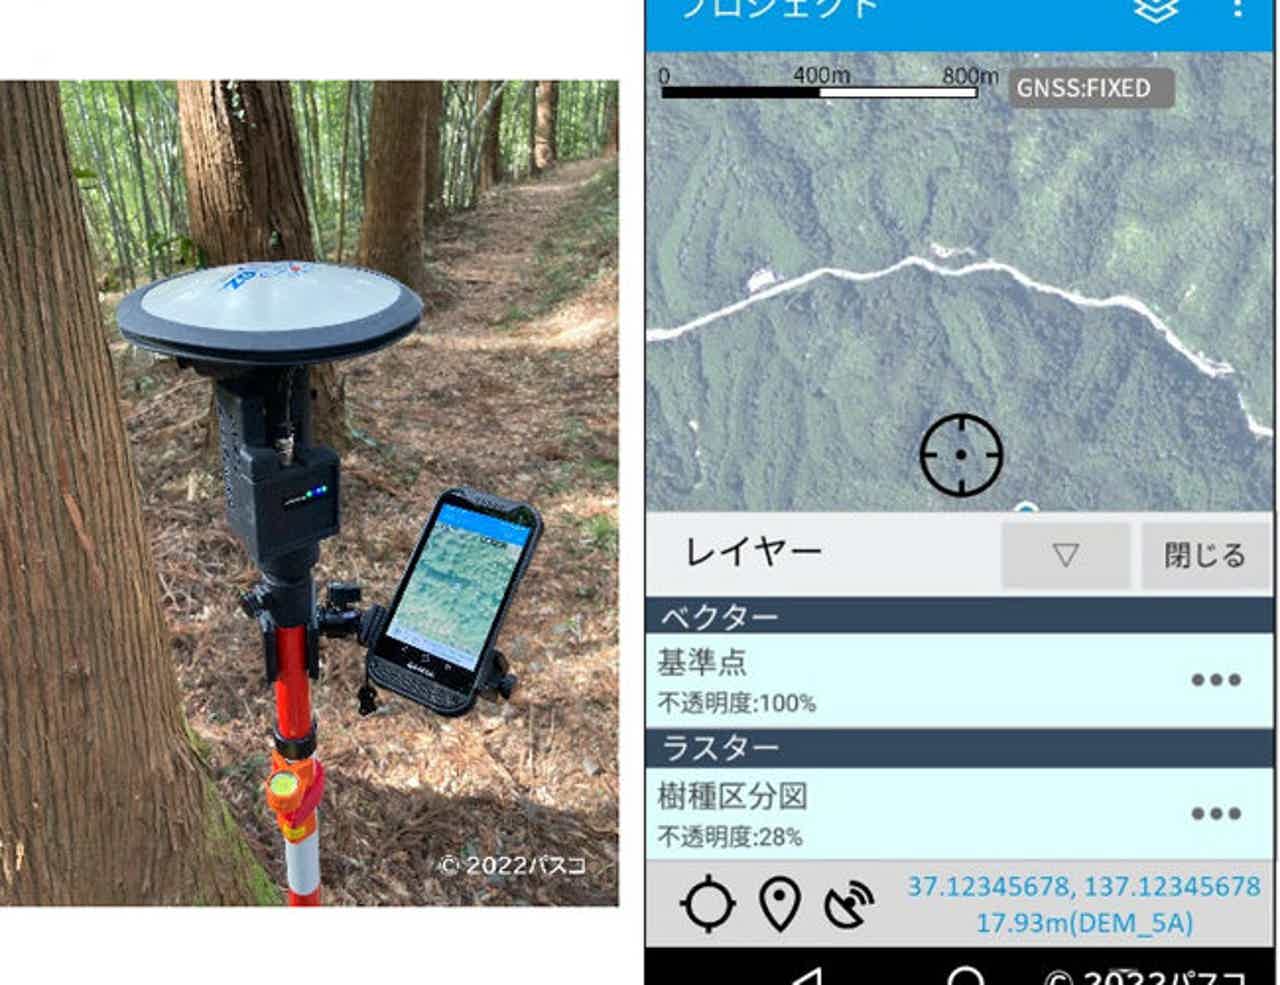 パスコ、森林内での現地調査ツール「SmartSOKURYO POLE」を提供開始